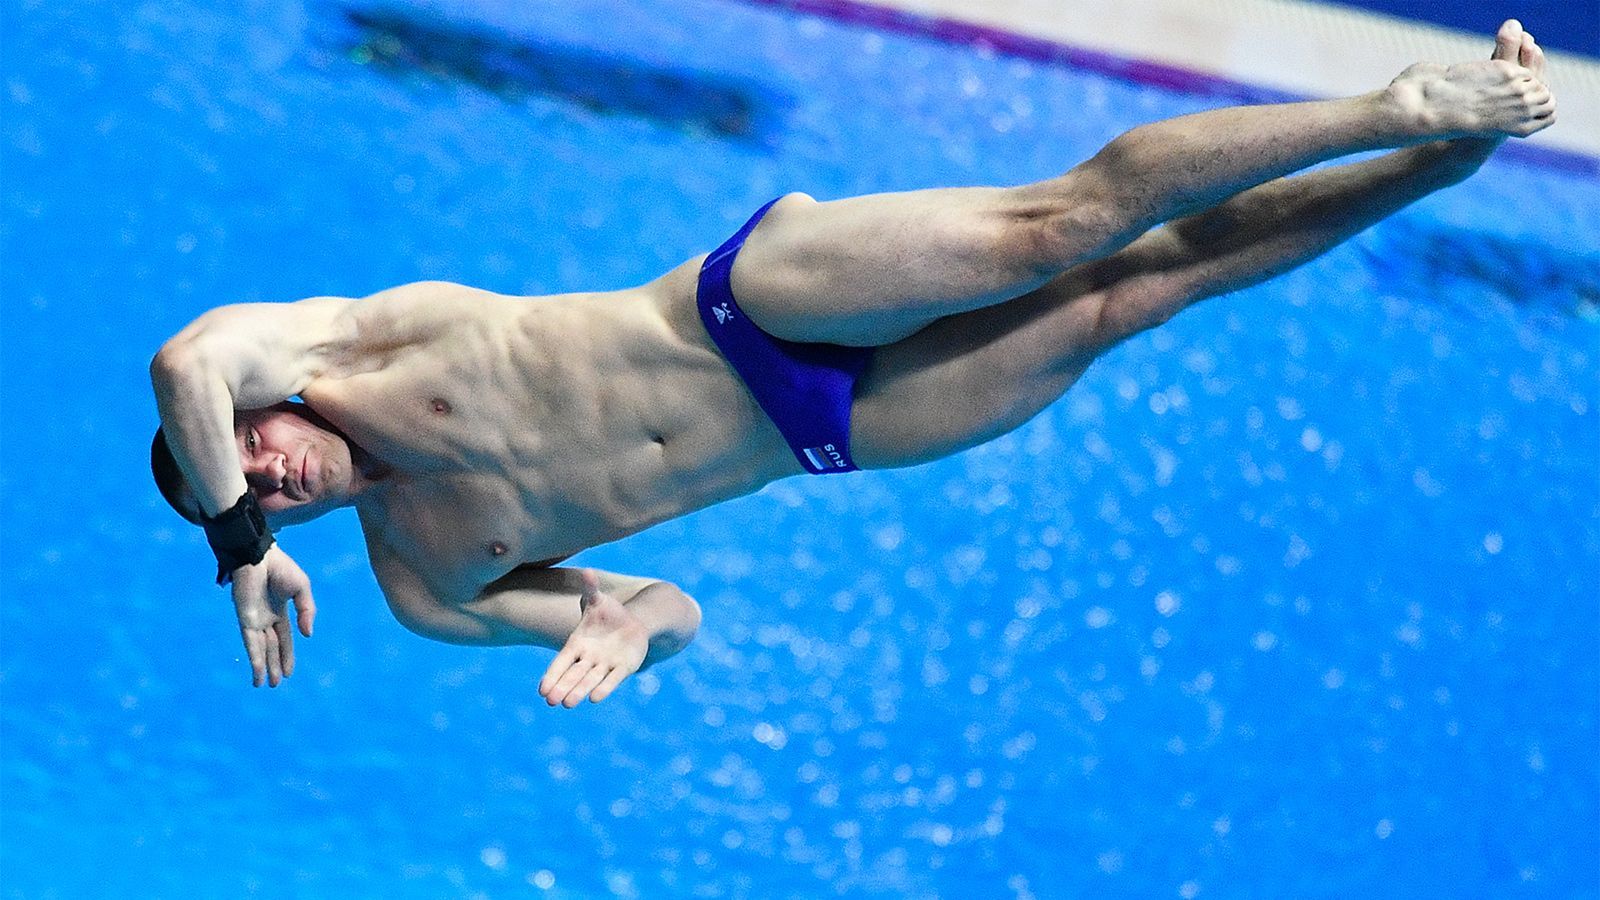 Глава федерации прыжков в воду: мы первые, кому сейчас удалось провести международные соревнования в стране